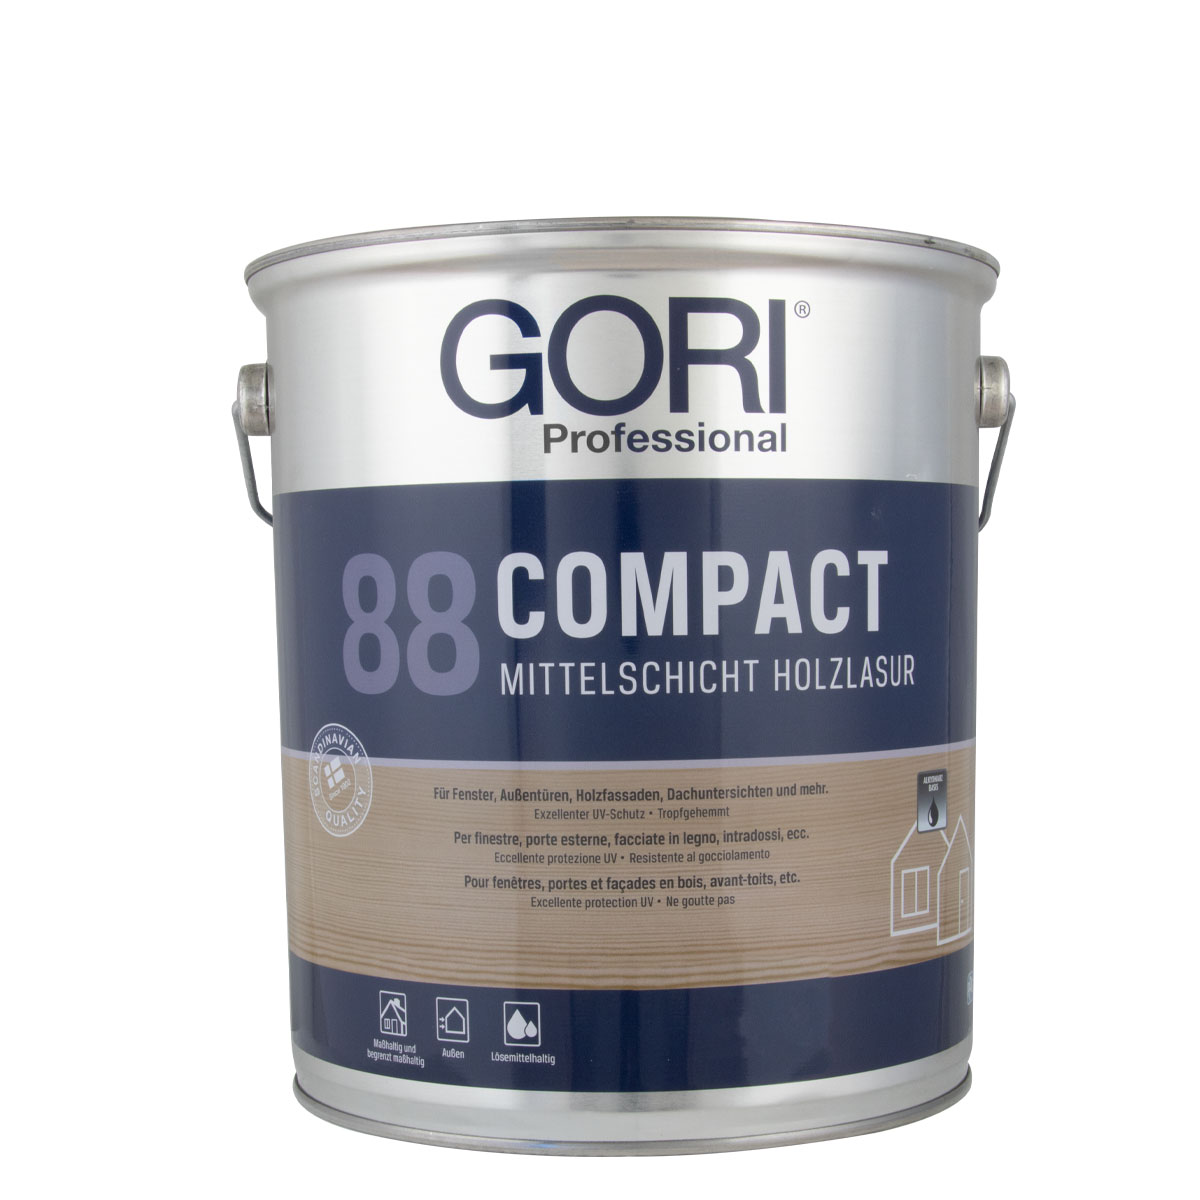 Gori_88_compact_5l_gross